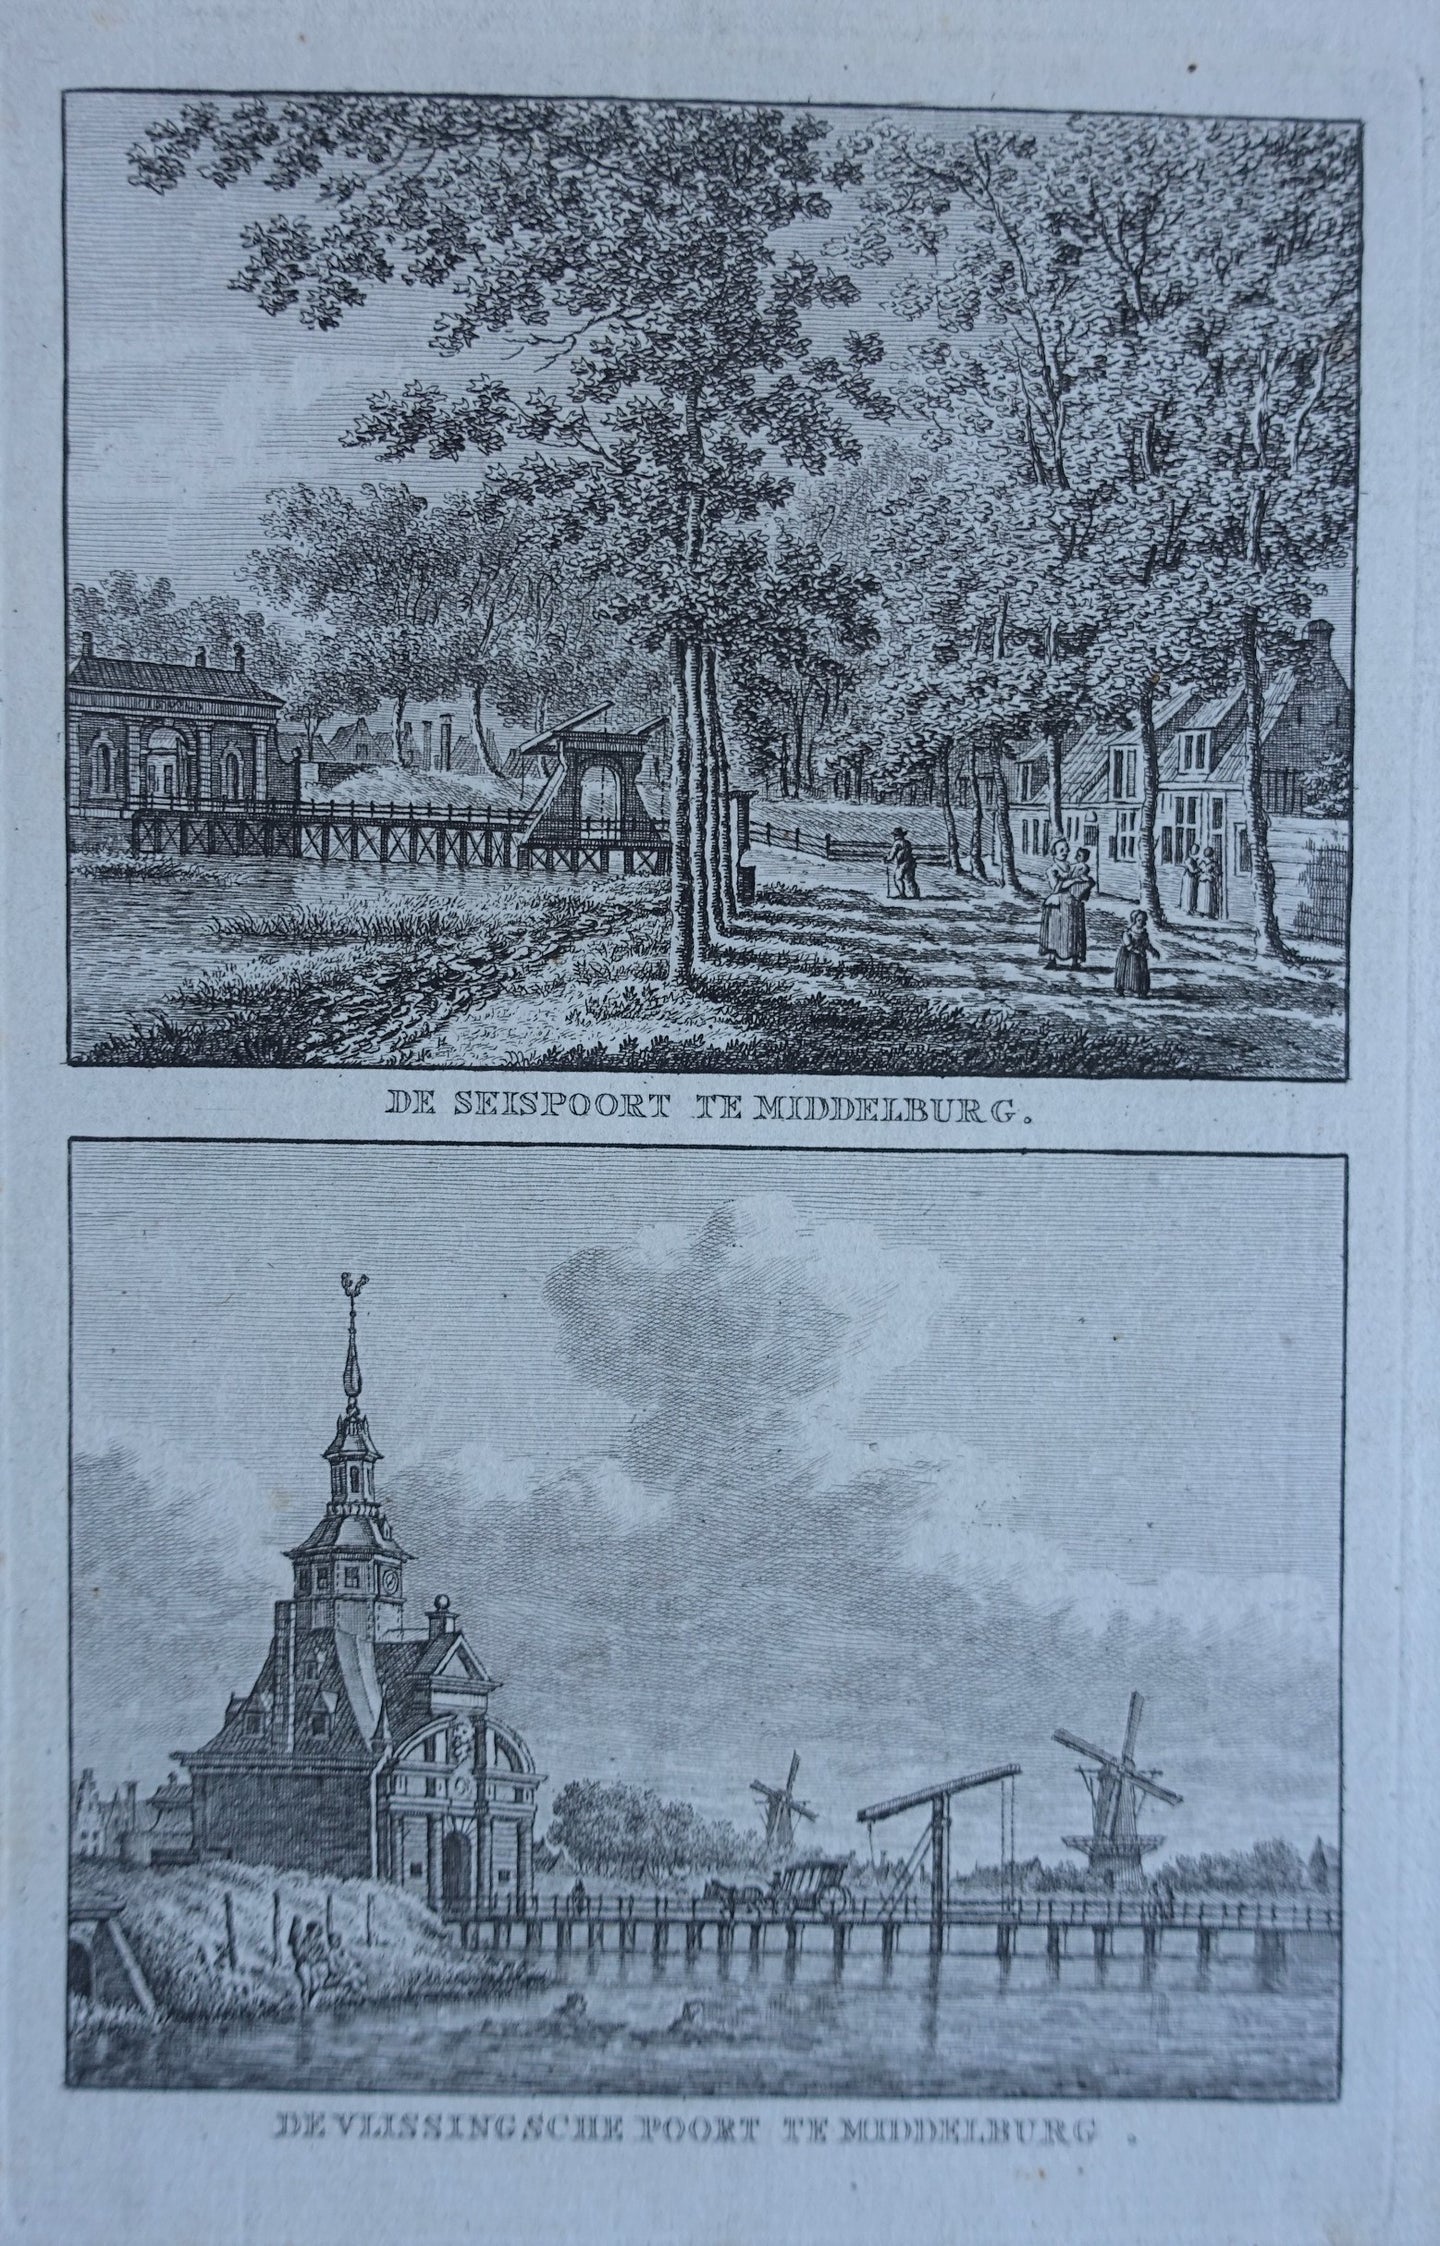 MIDDELBURG Seispoort en Vlissingsche poort - KF Bendorp - 1793